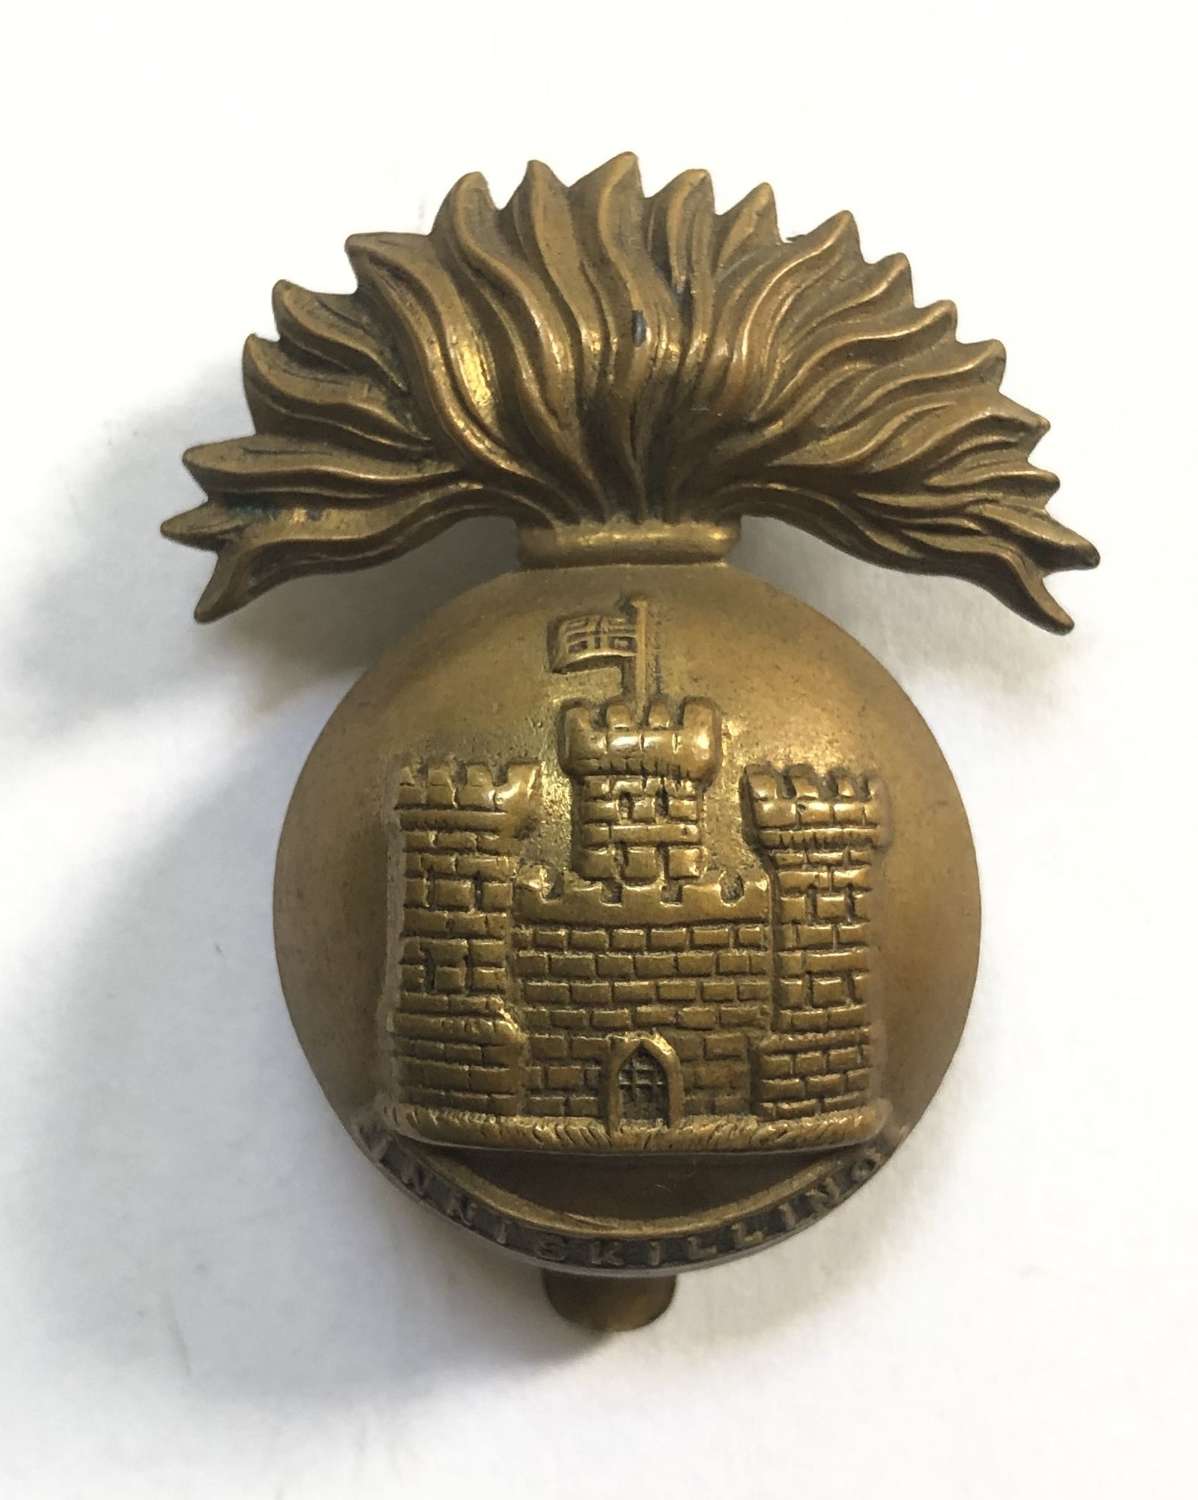 Irish. Royal Inniskilling Fusiliers 1916 brass economy cap badge